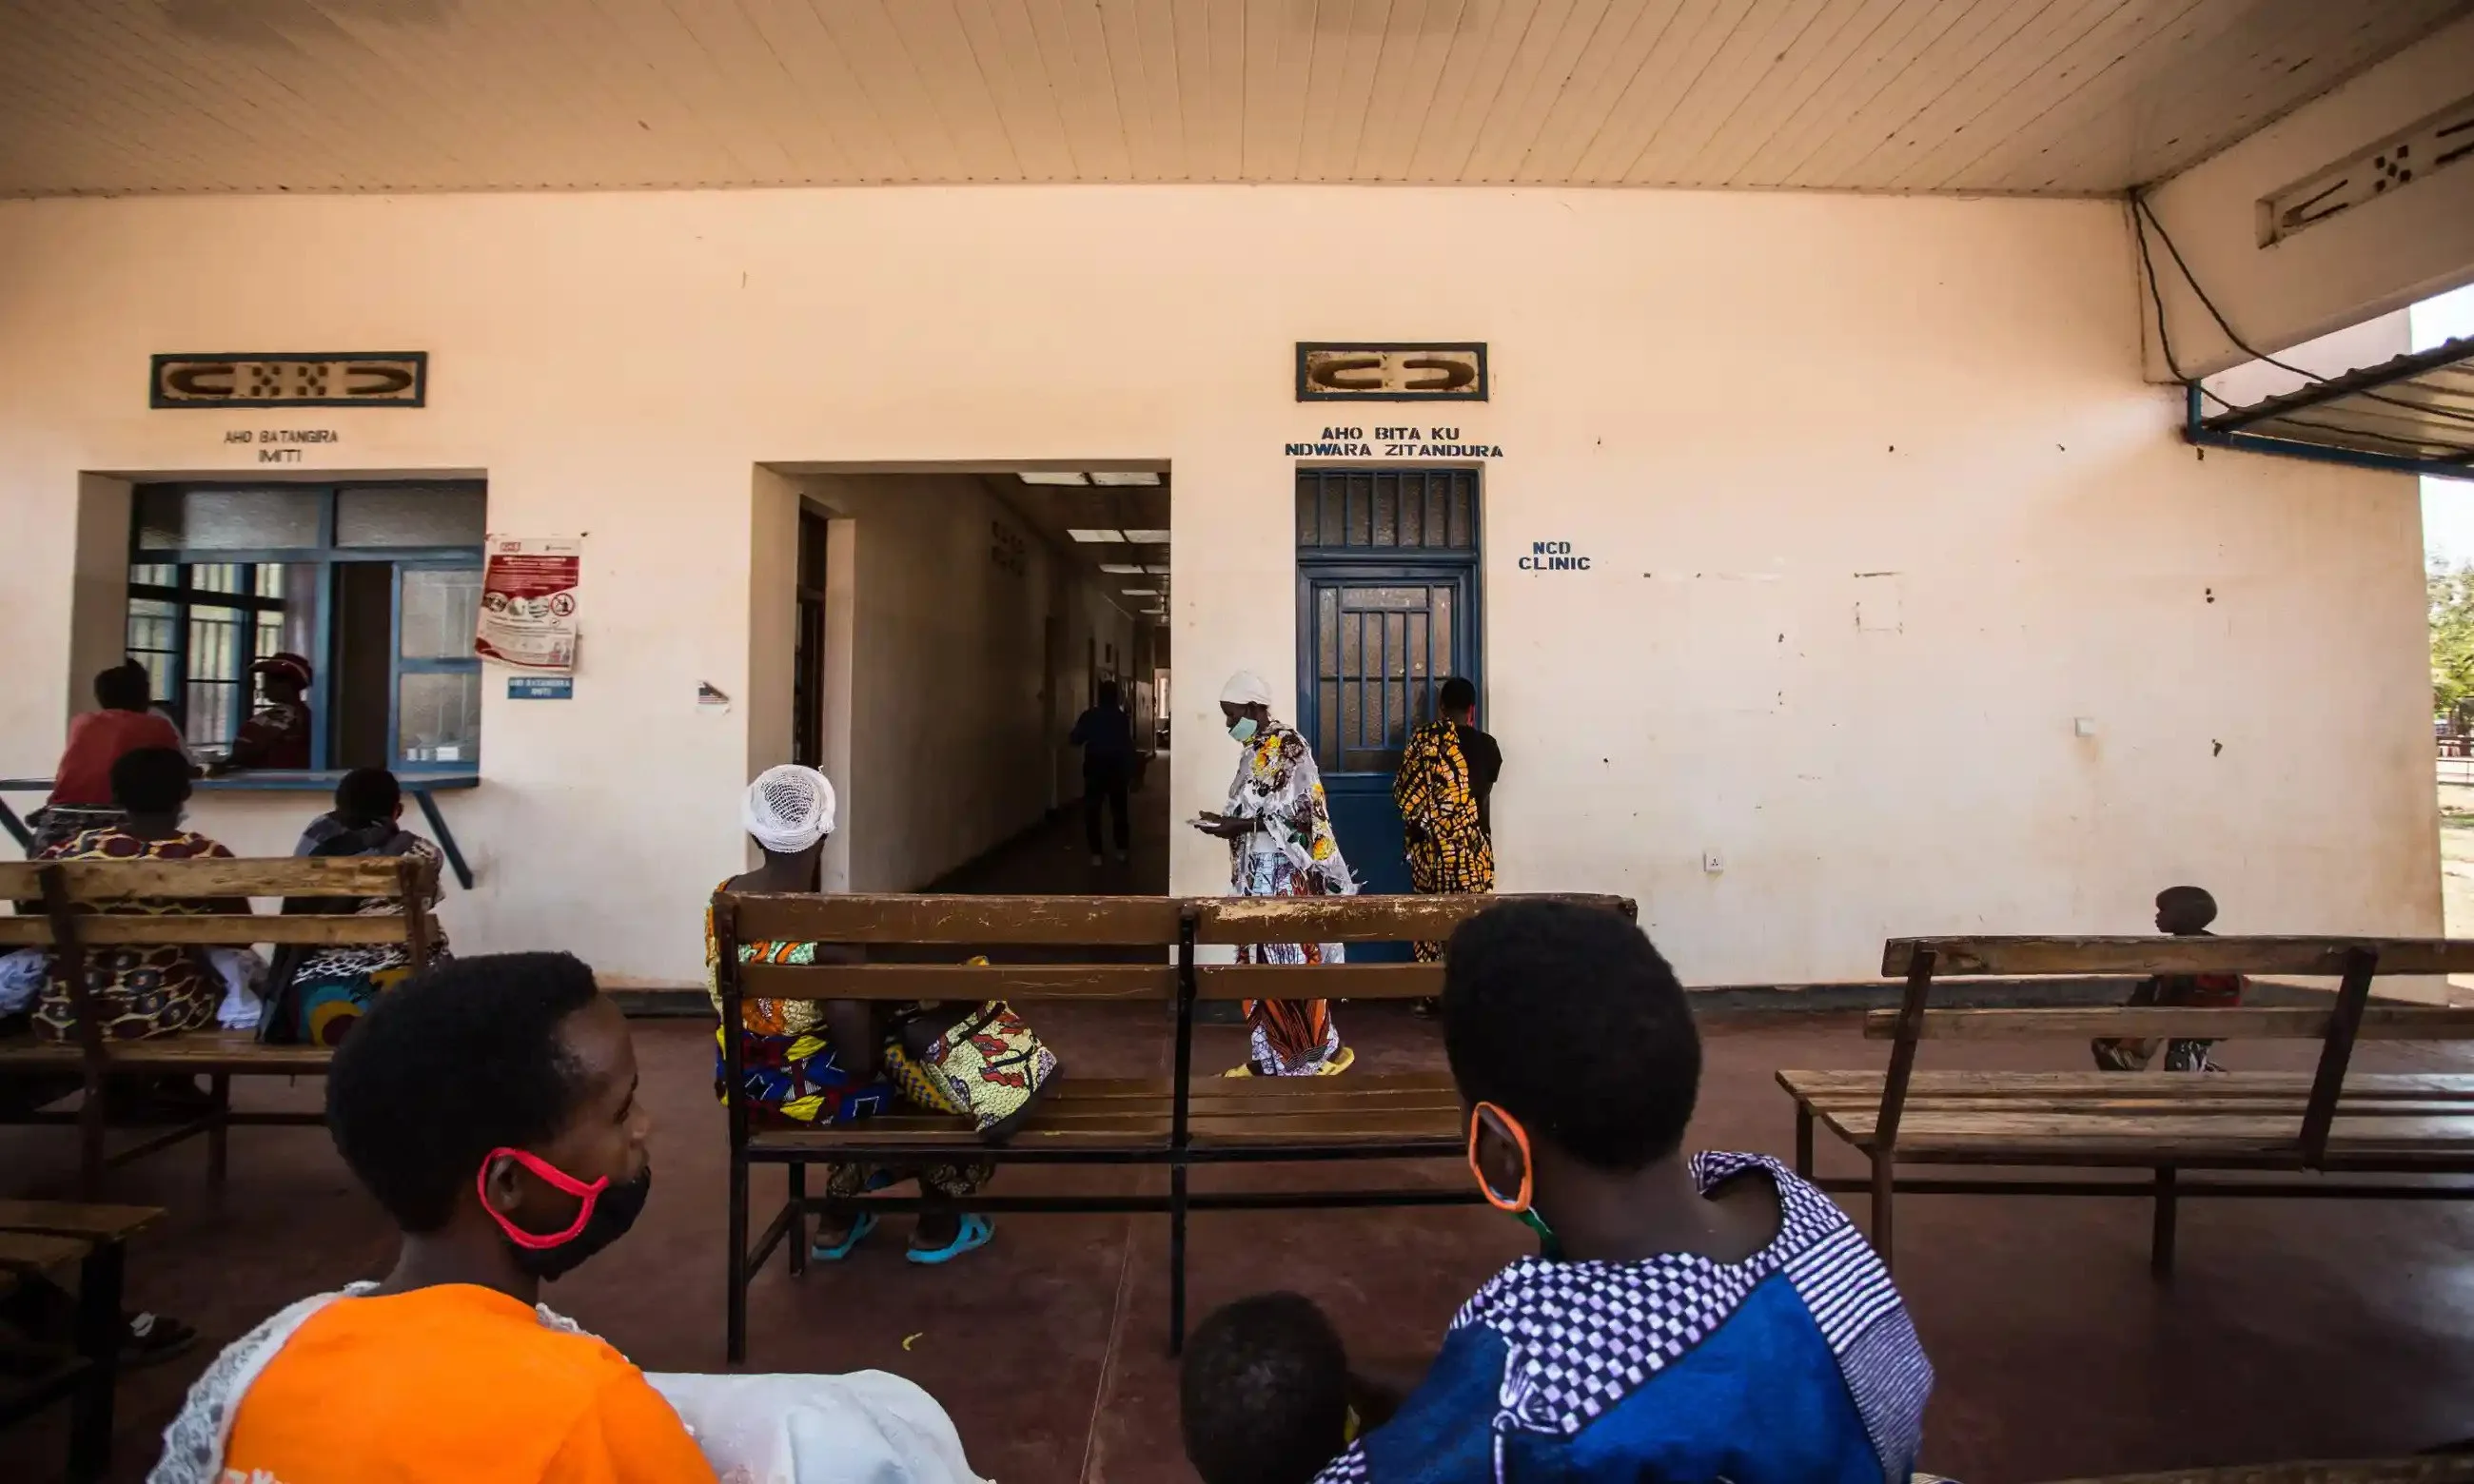 يستضيف مركز الانتقال في غاشورا لاجئين أفارقة بانتظار الحصول على اللجوء أو التوطين في أي مكان آخر